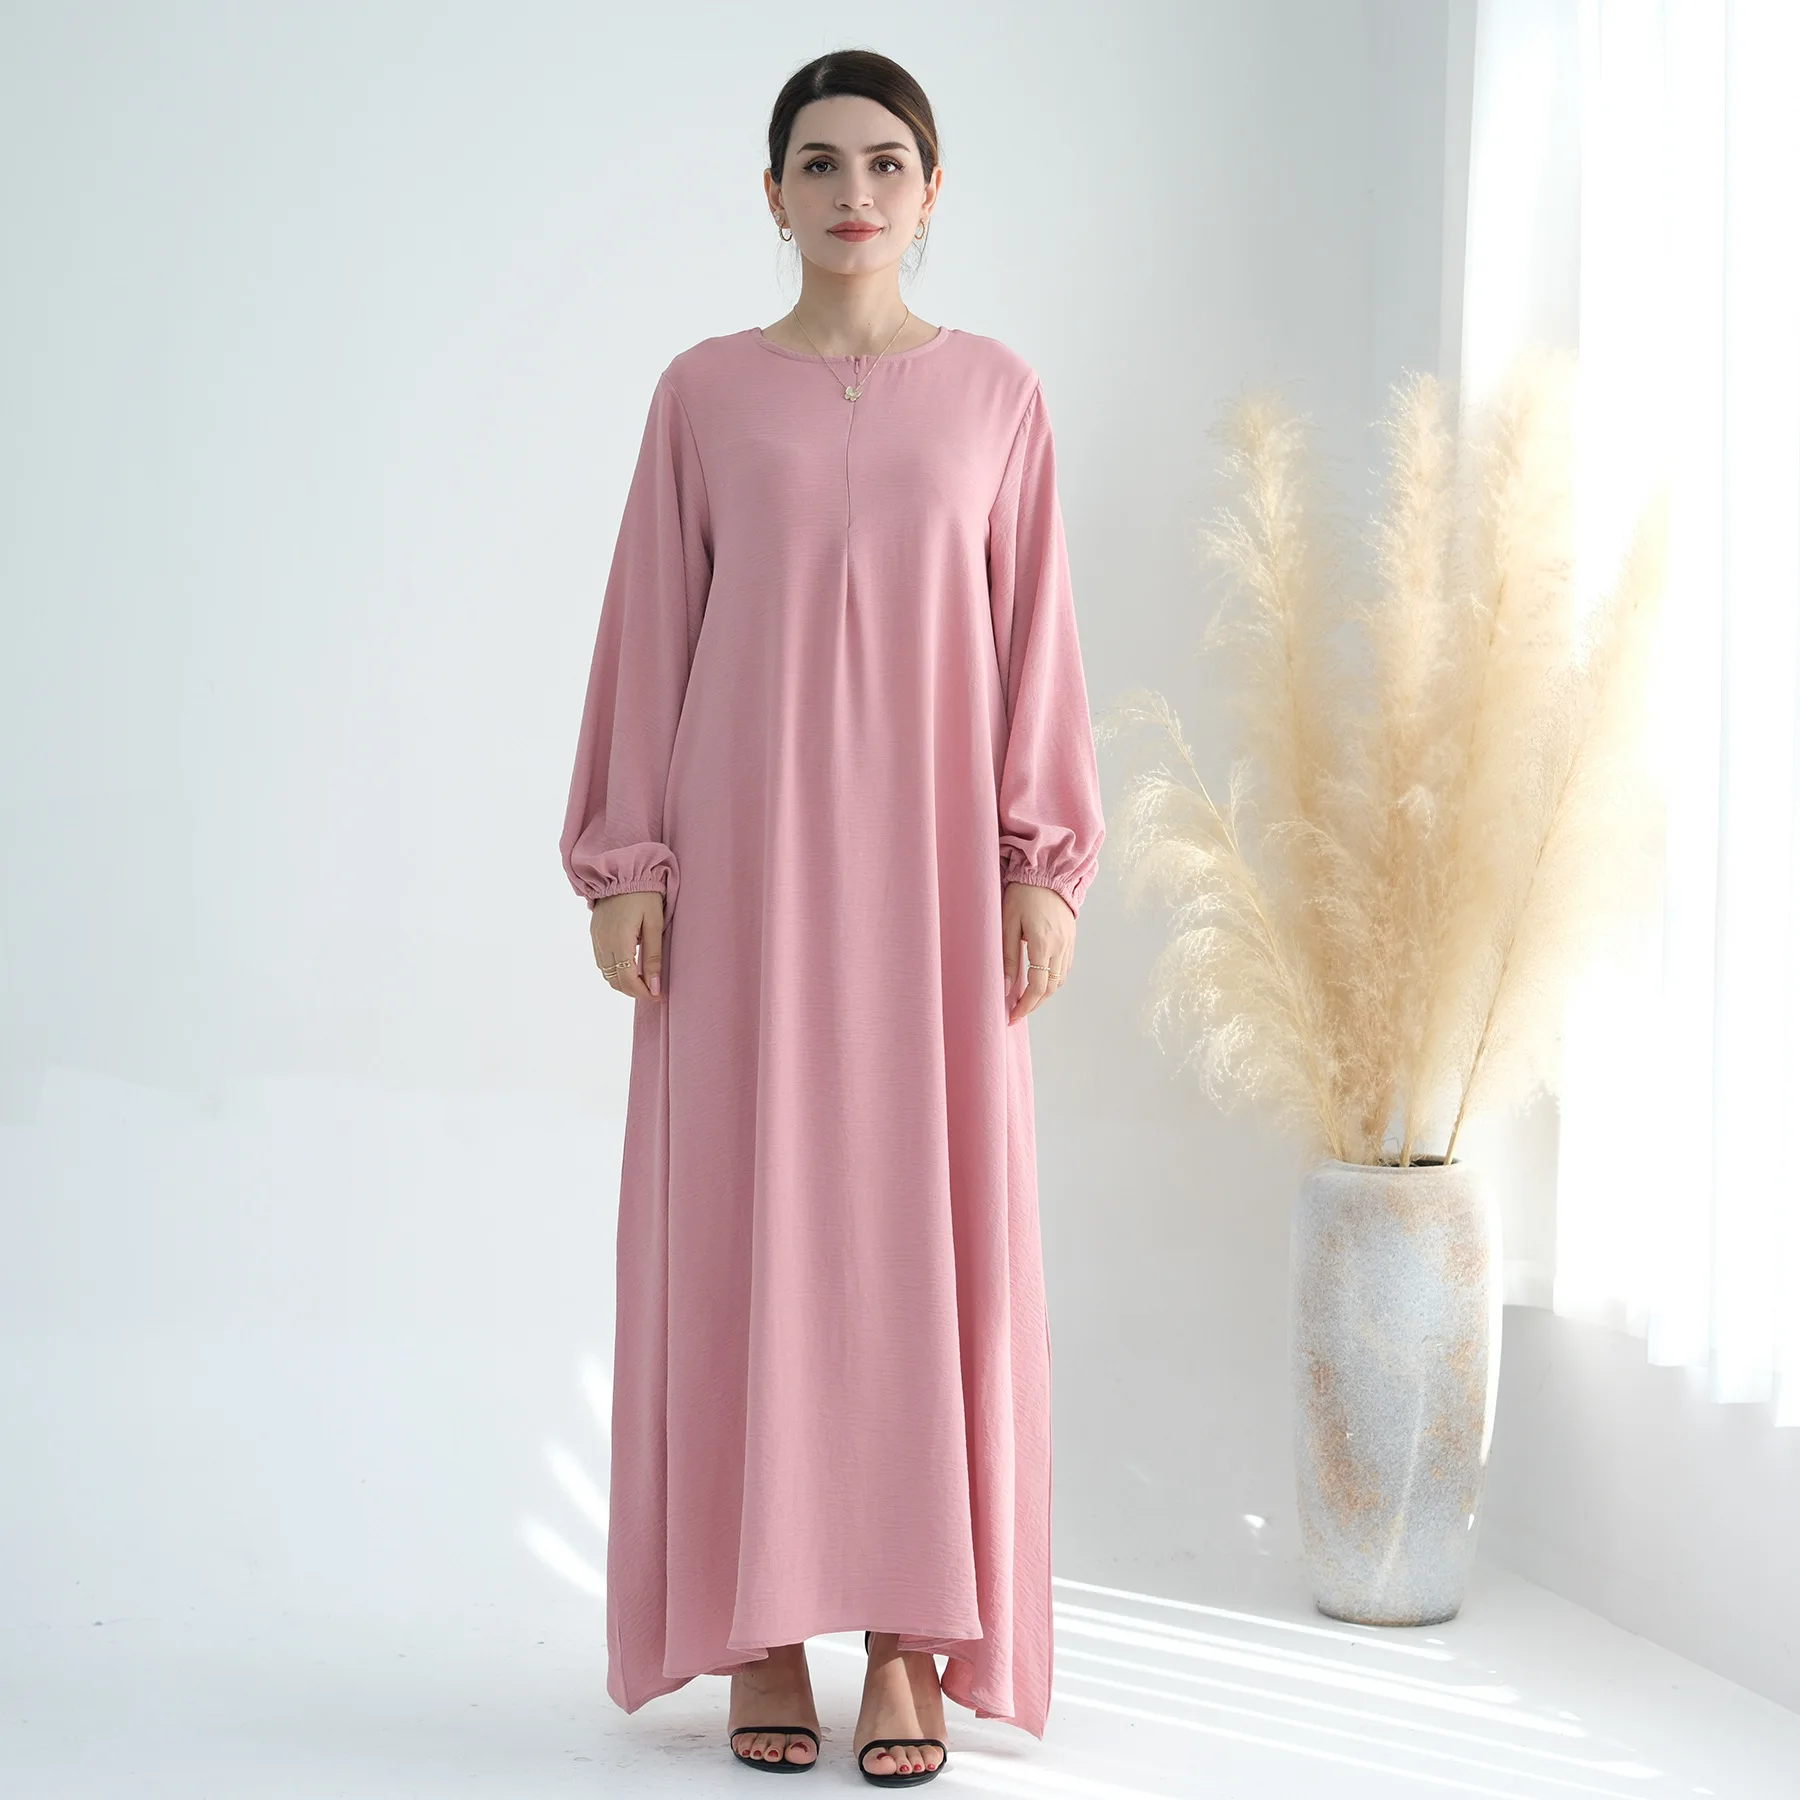 

Ramadan Plain Under Abaya Dress Zipper Front Elastic Wrists Crepe Muslim Dresses for Women Dubai Islamic Clothing Kaftan Robe